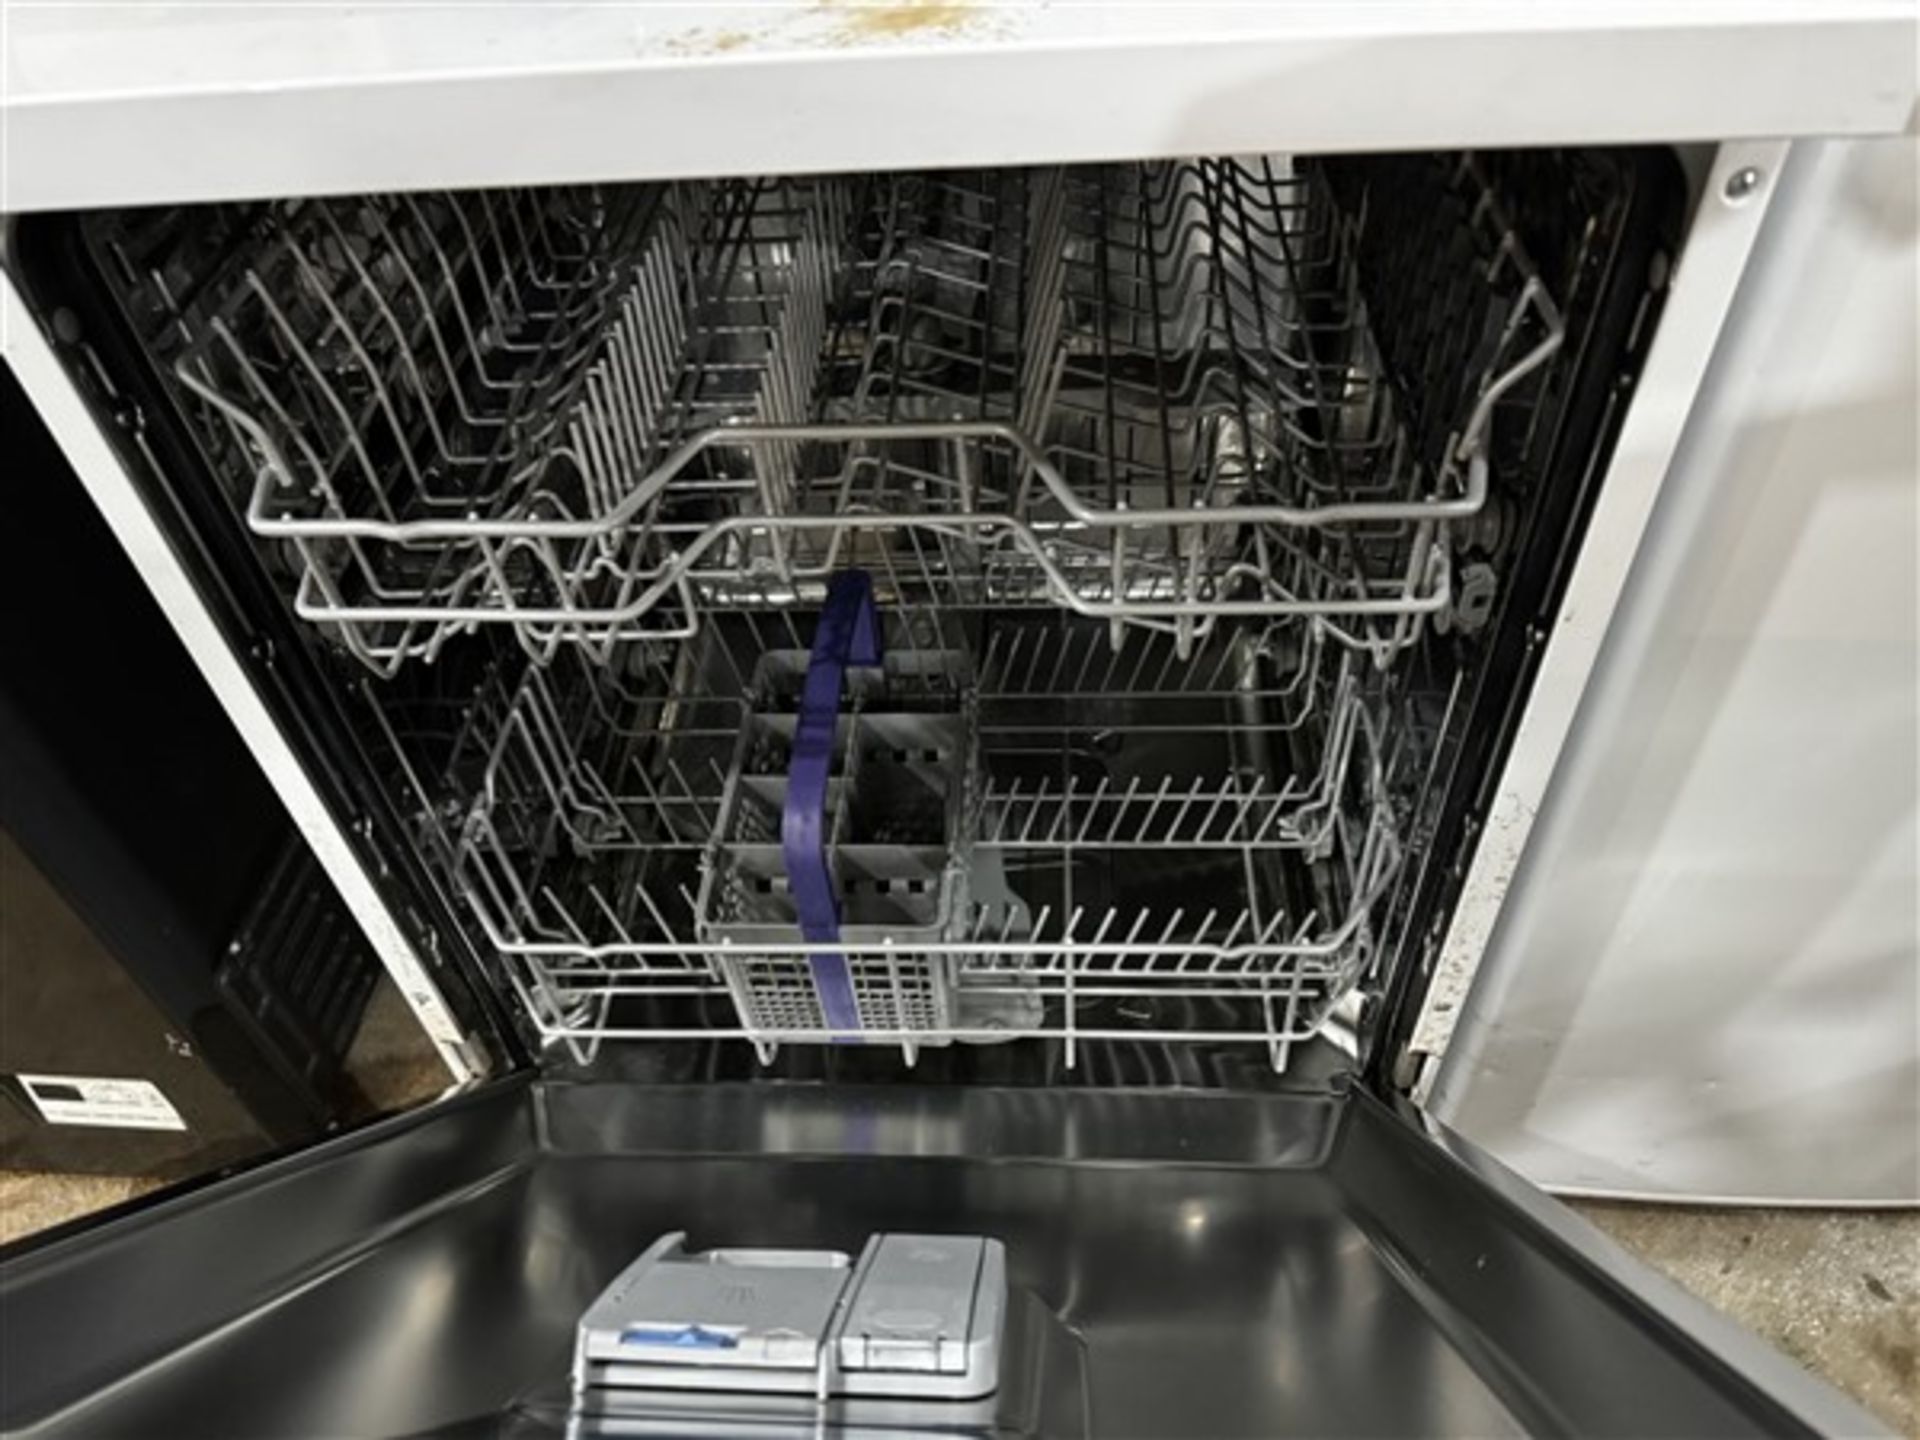 Beko dishwasher, model DVN0SR20W and an unbranded fridge - Image 5 of 6